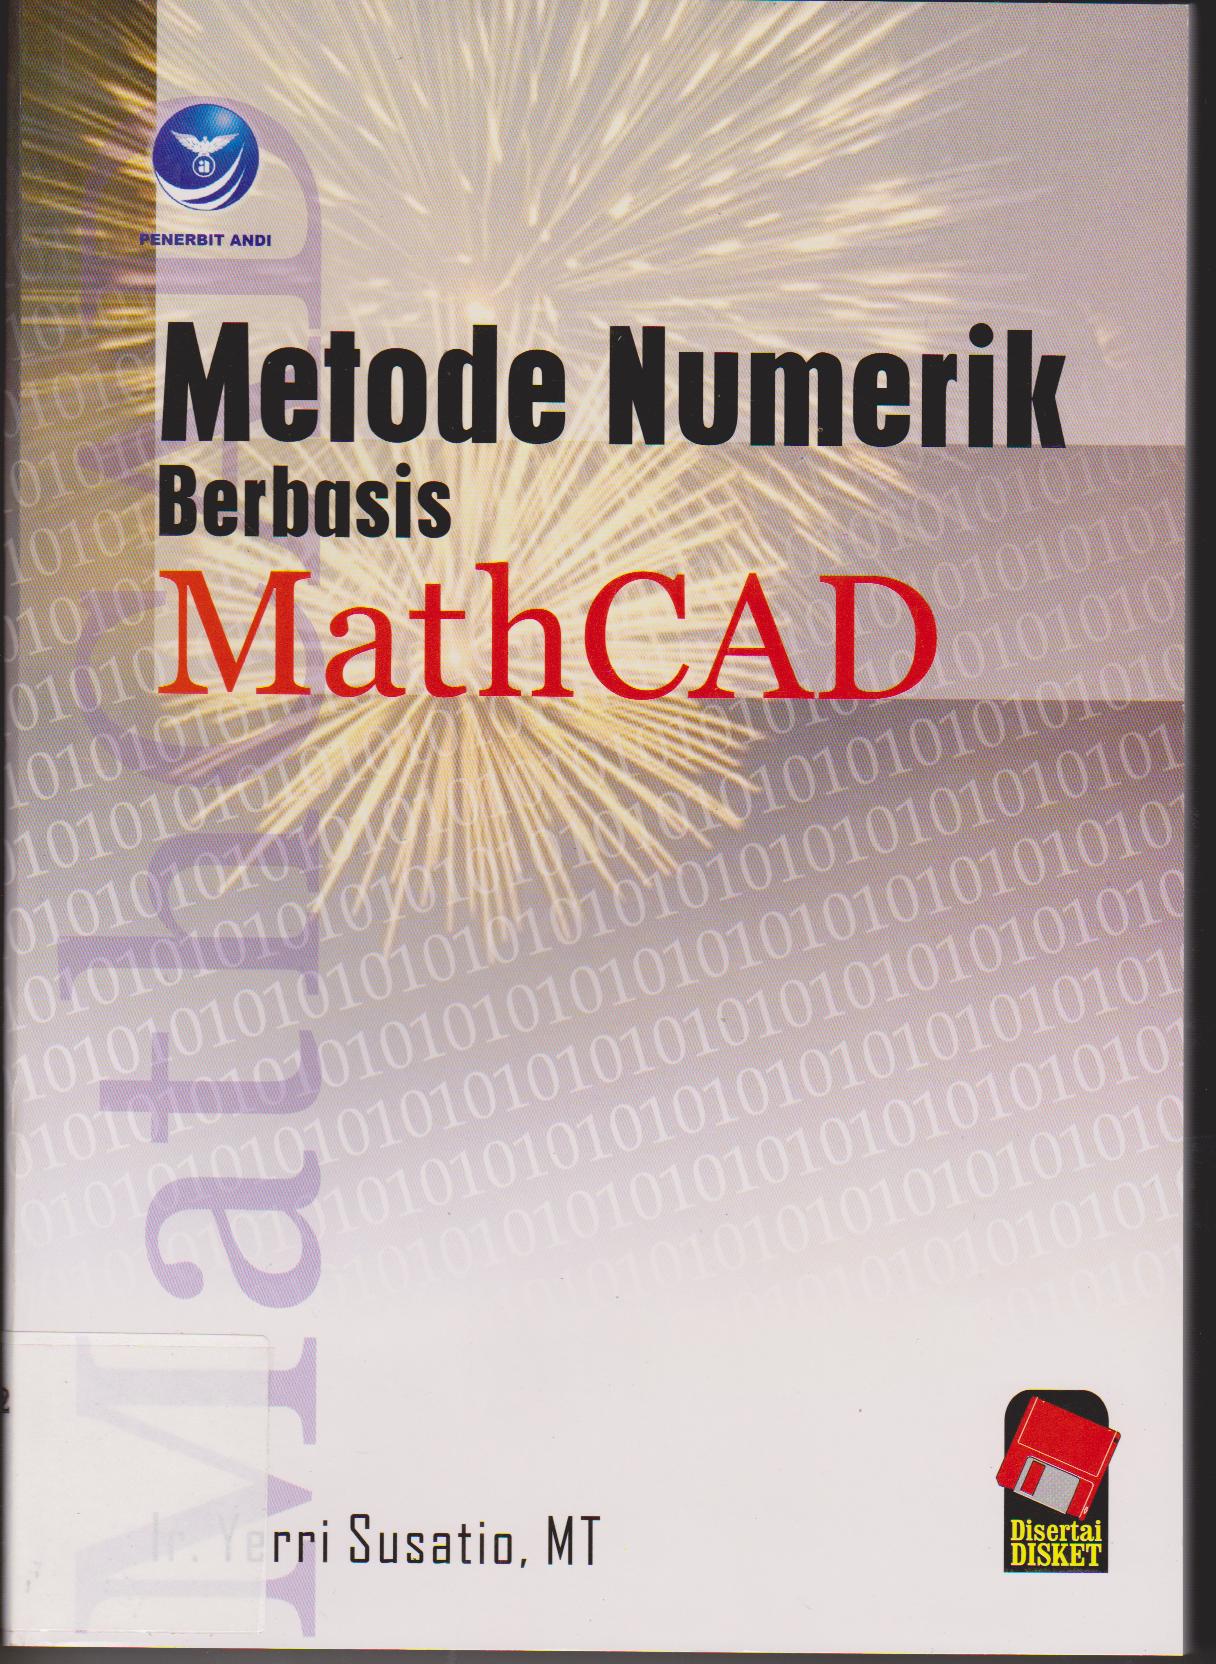 Metode Numerik berbasis Math Cad